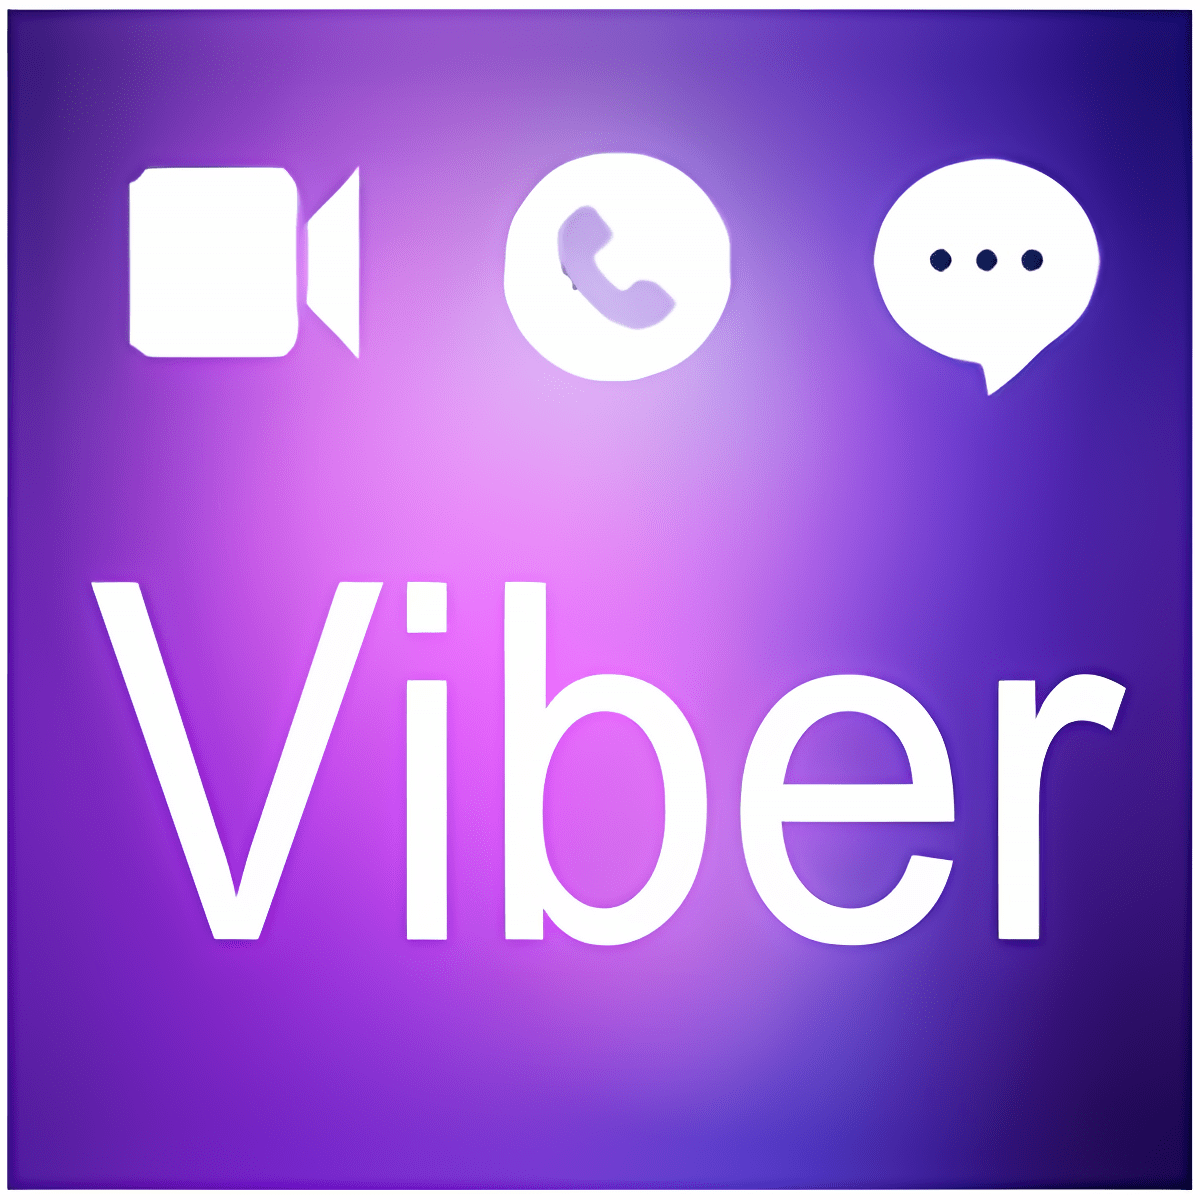 Вайбер качество видео. Вайбер 2017. Viber Video. Короткая вайбер лого видео. Надпись и логотип Viber PNG.